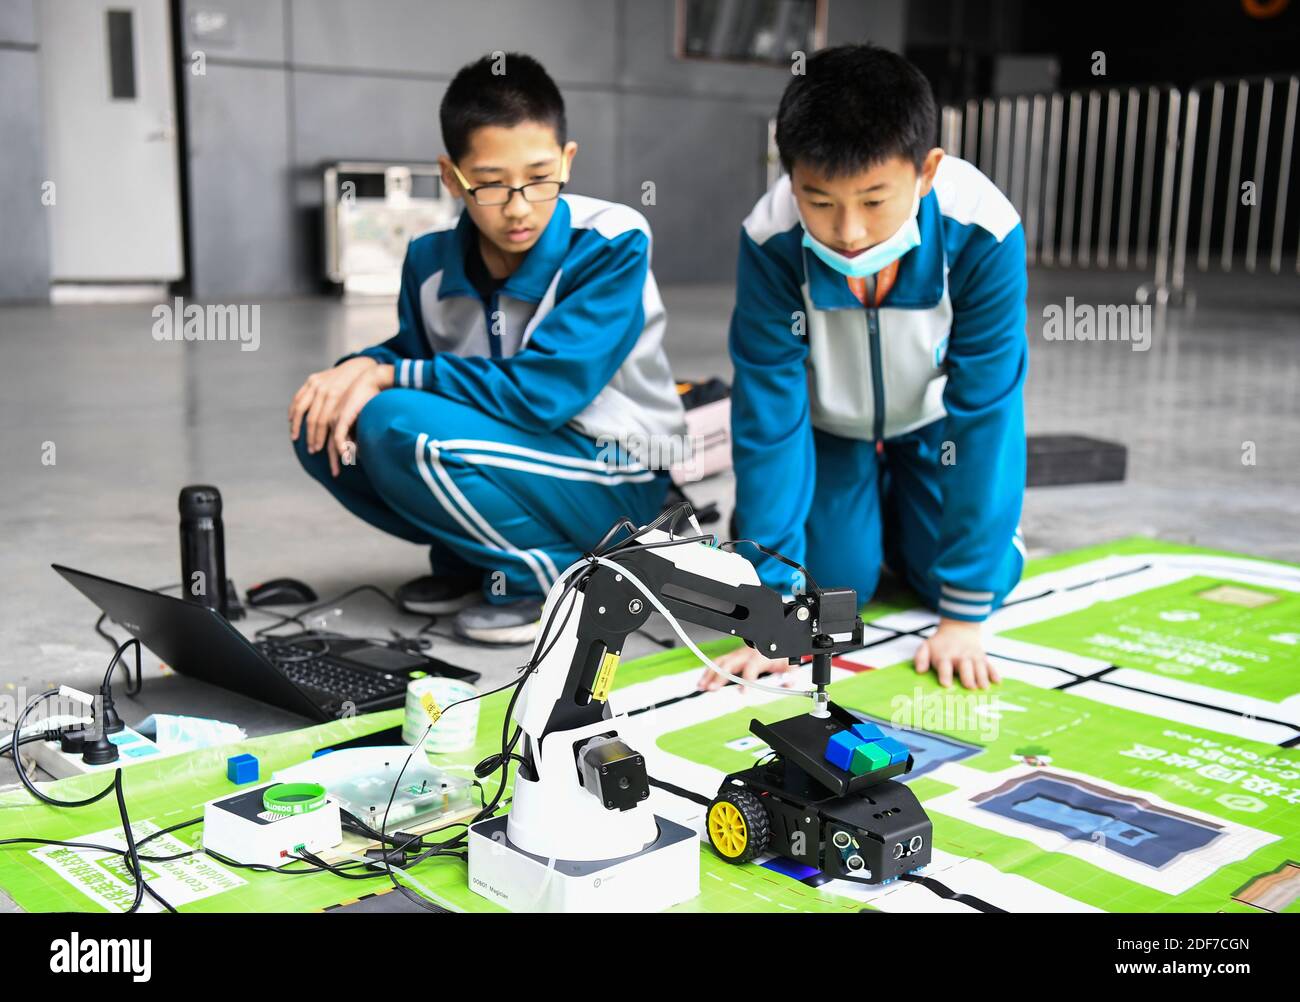 Foshan, provincia cinese di Guangdong. 3 dicembre 2020. I concorrenti provano i dispositivi durante le finali del concorso World Robot 2020 a Foshan, provincia di Guangdong, nella Cina meridionale, il 3 dicembre 2020. Le finali del World Robot Contest 2020 sono state aperte qui giovedì. I concorsi di quest'anno includono un concorso coesistente-cooperativo-cognitivo (Tri-Co), un concorso controllato Brain-computer Interface (BCI), un concorso di applicazioni robot e un concorso per giovani designer. Credit: Deng Hua/Xinhua/Alamy Live News Foto Stock